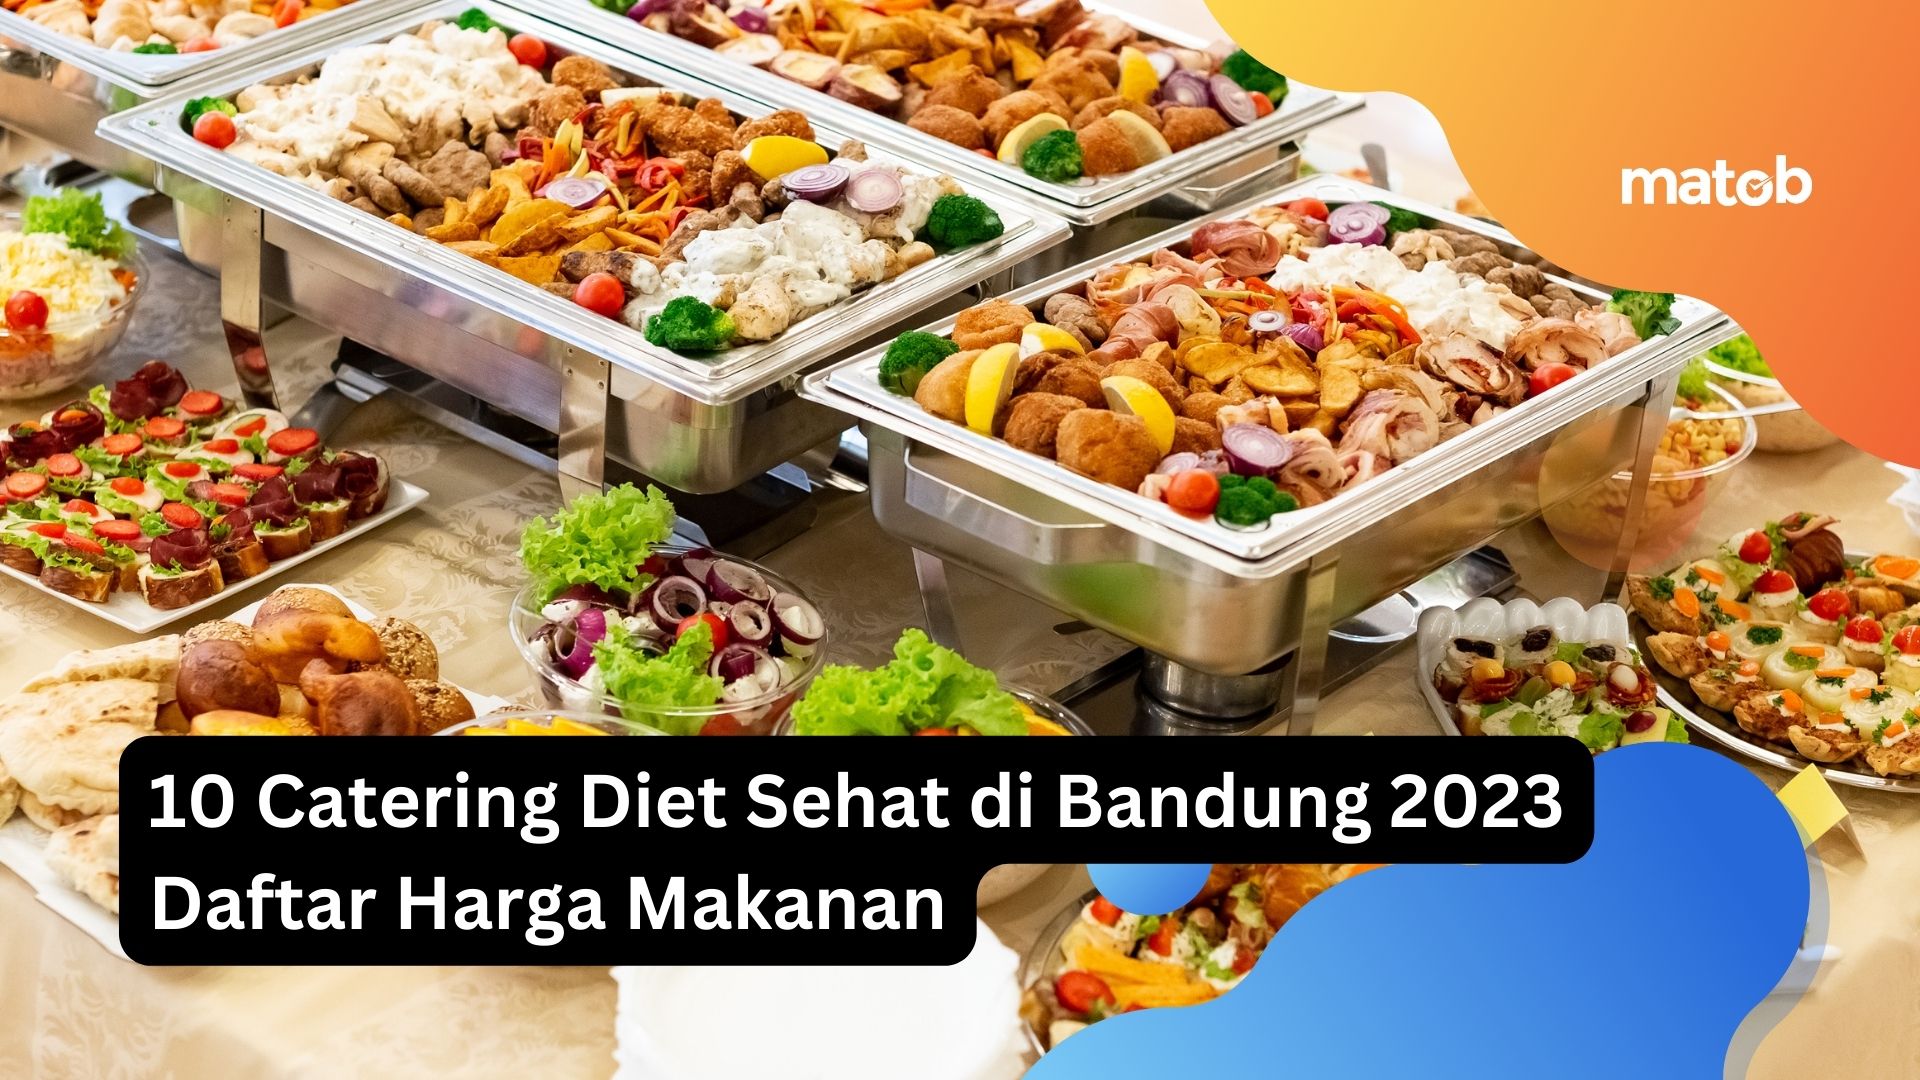 10 Catering Diet Sehat di Bandung 2023 Daftar Harga Makanan